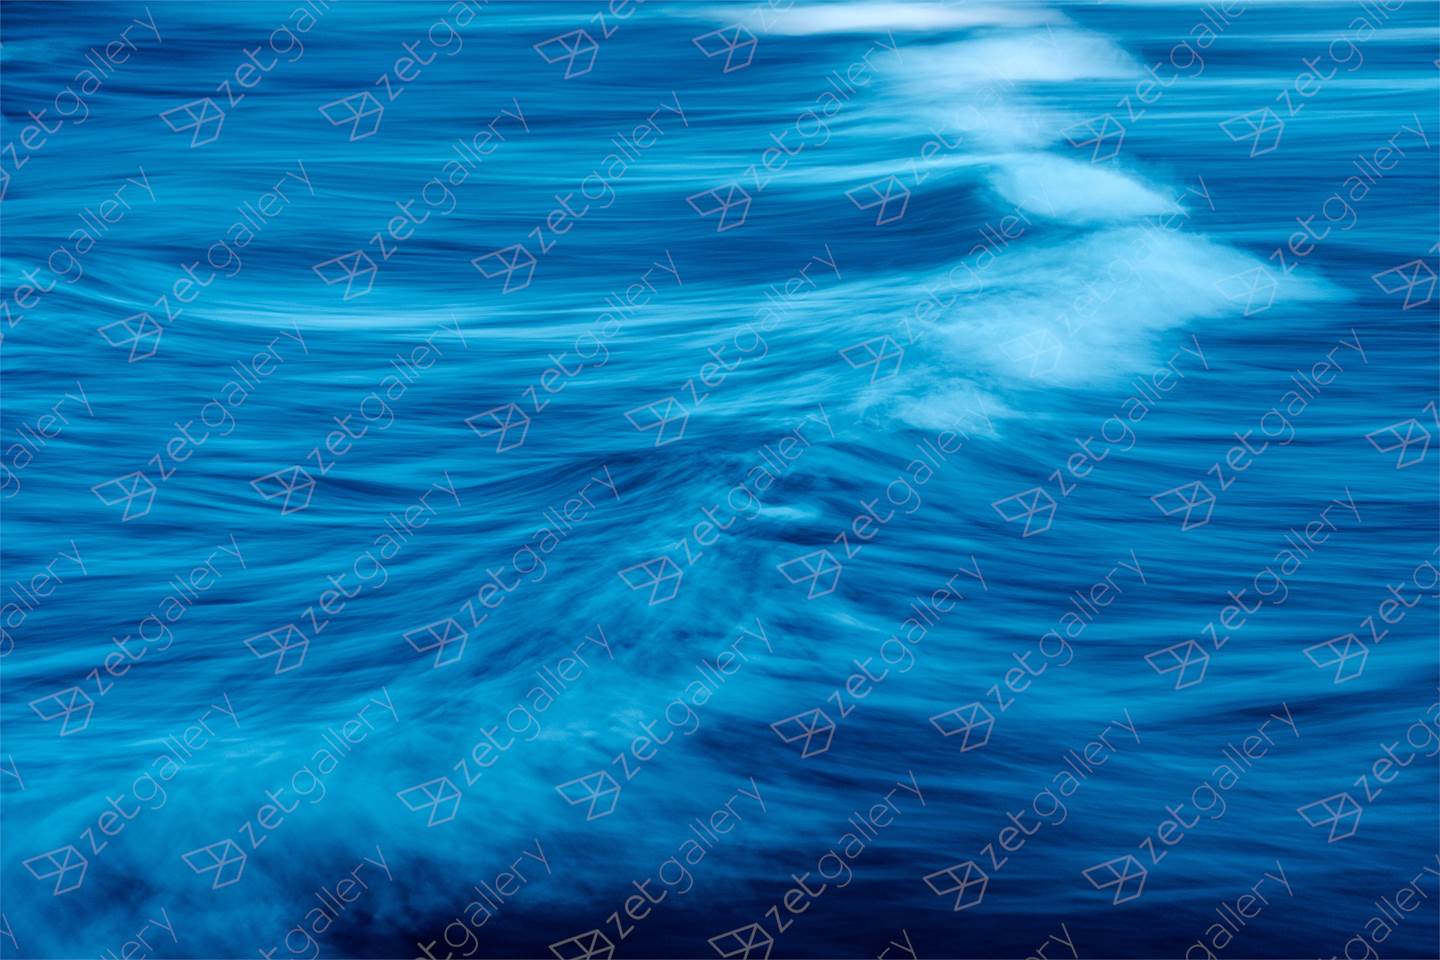 BLUE WAVE, Extra Large Edition 1 of 3, original Abstrait Numérique La photographie par Benjamin Lurie